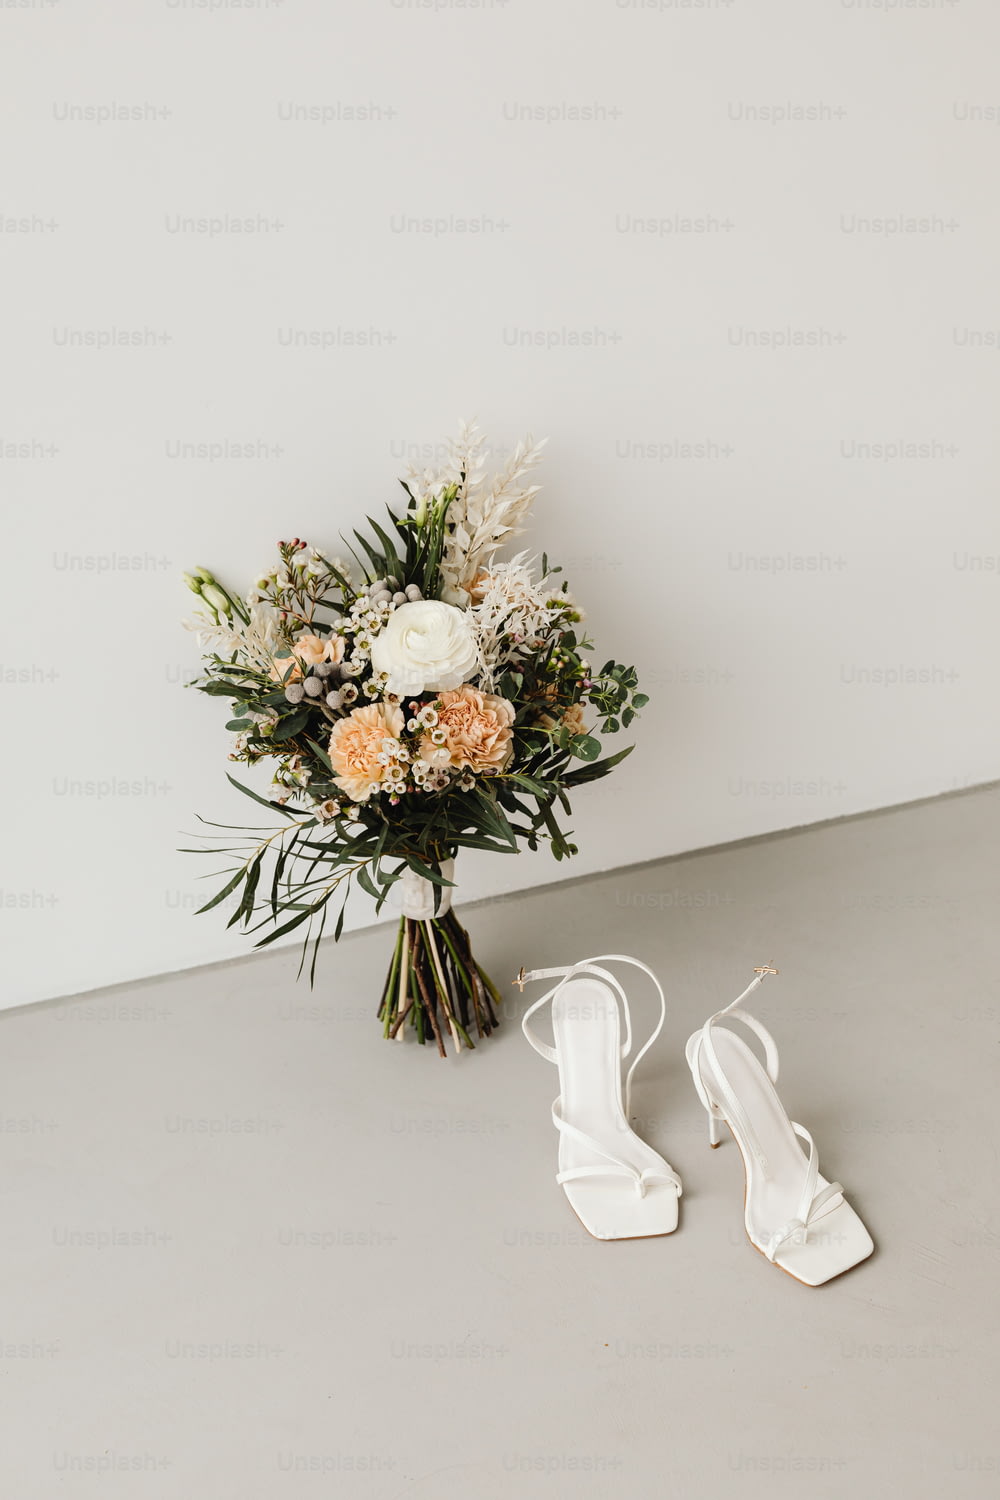 um buquê de flores e um par de sapatos brancos